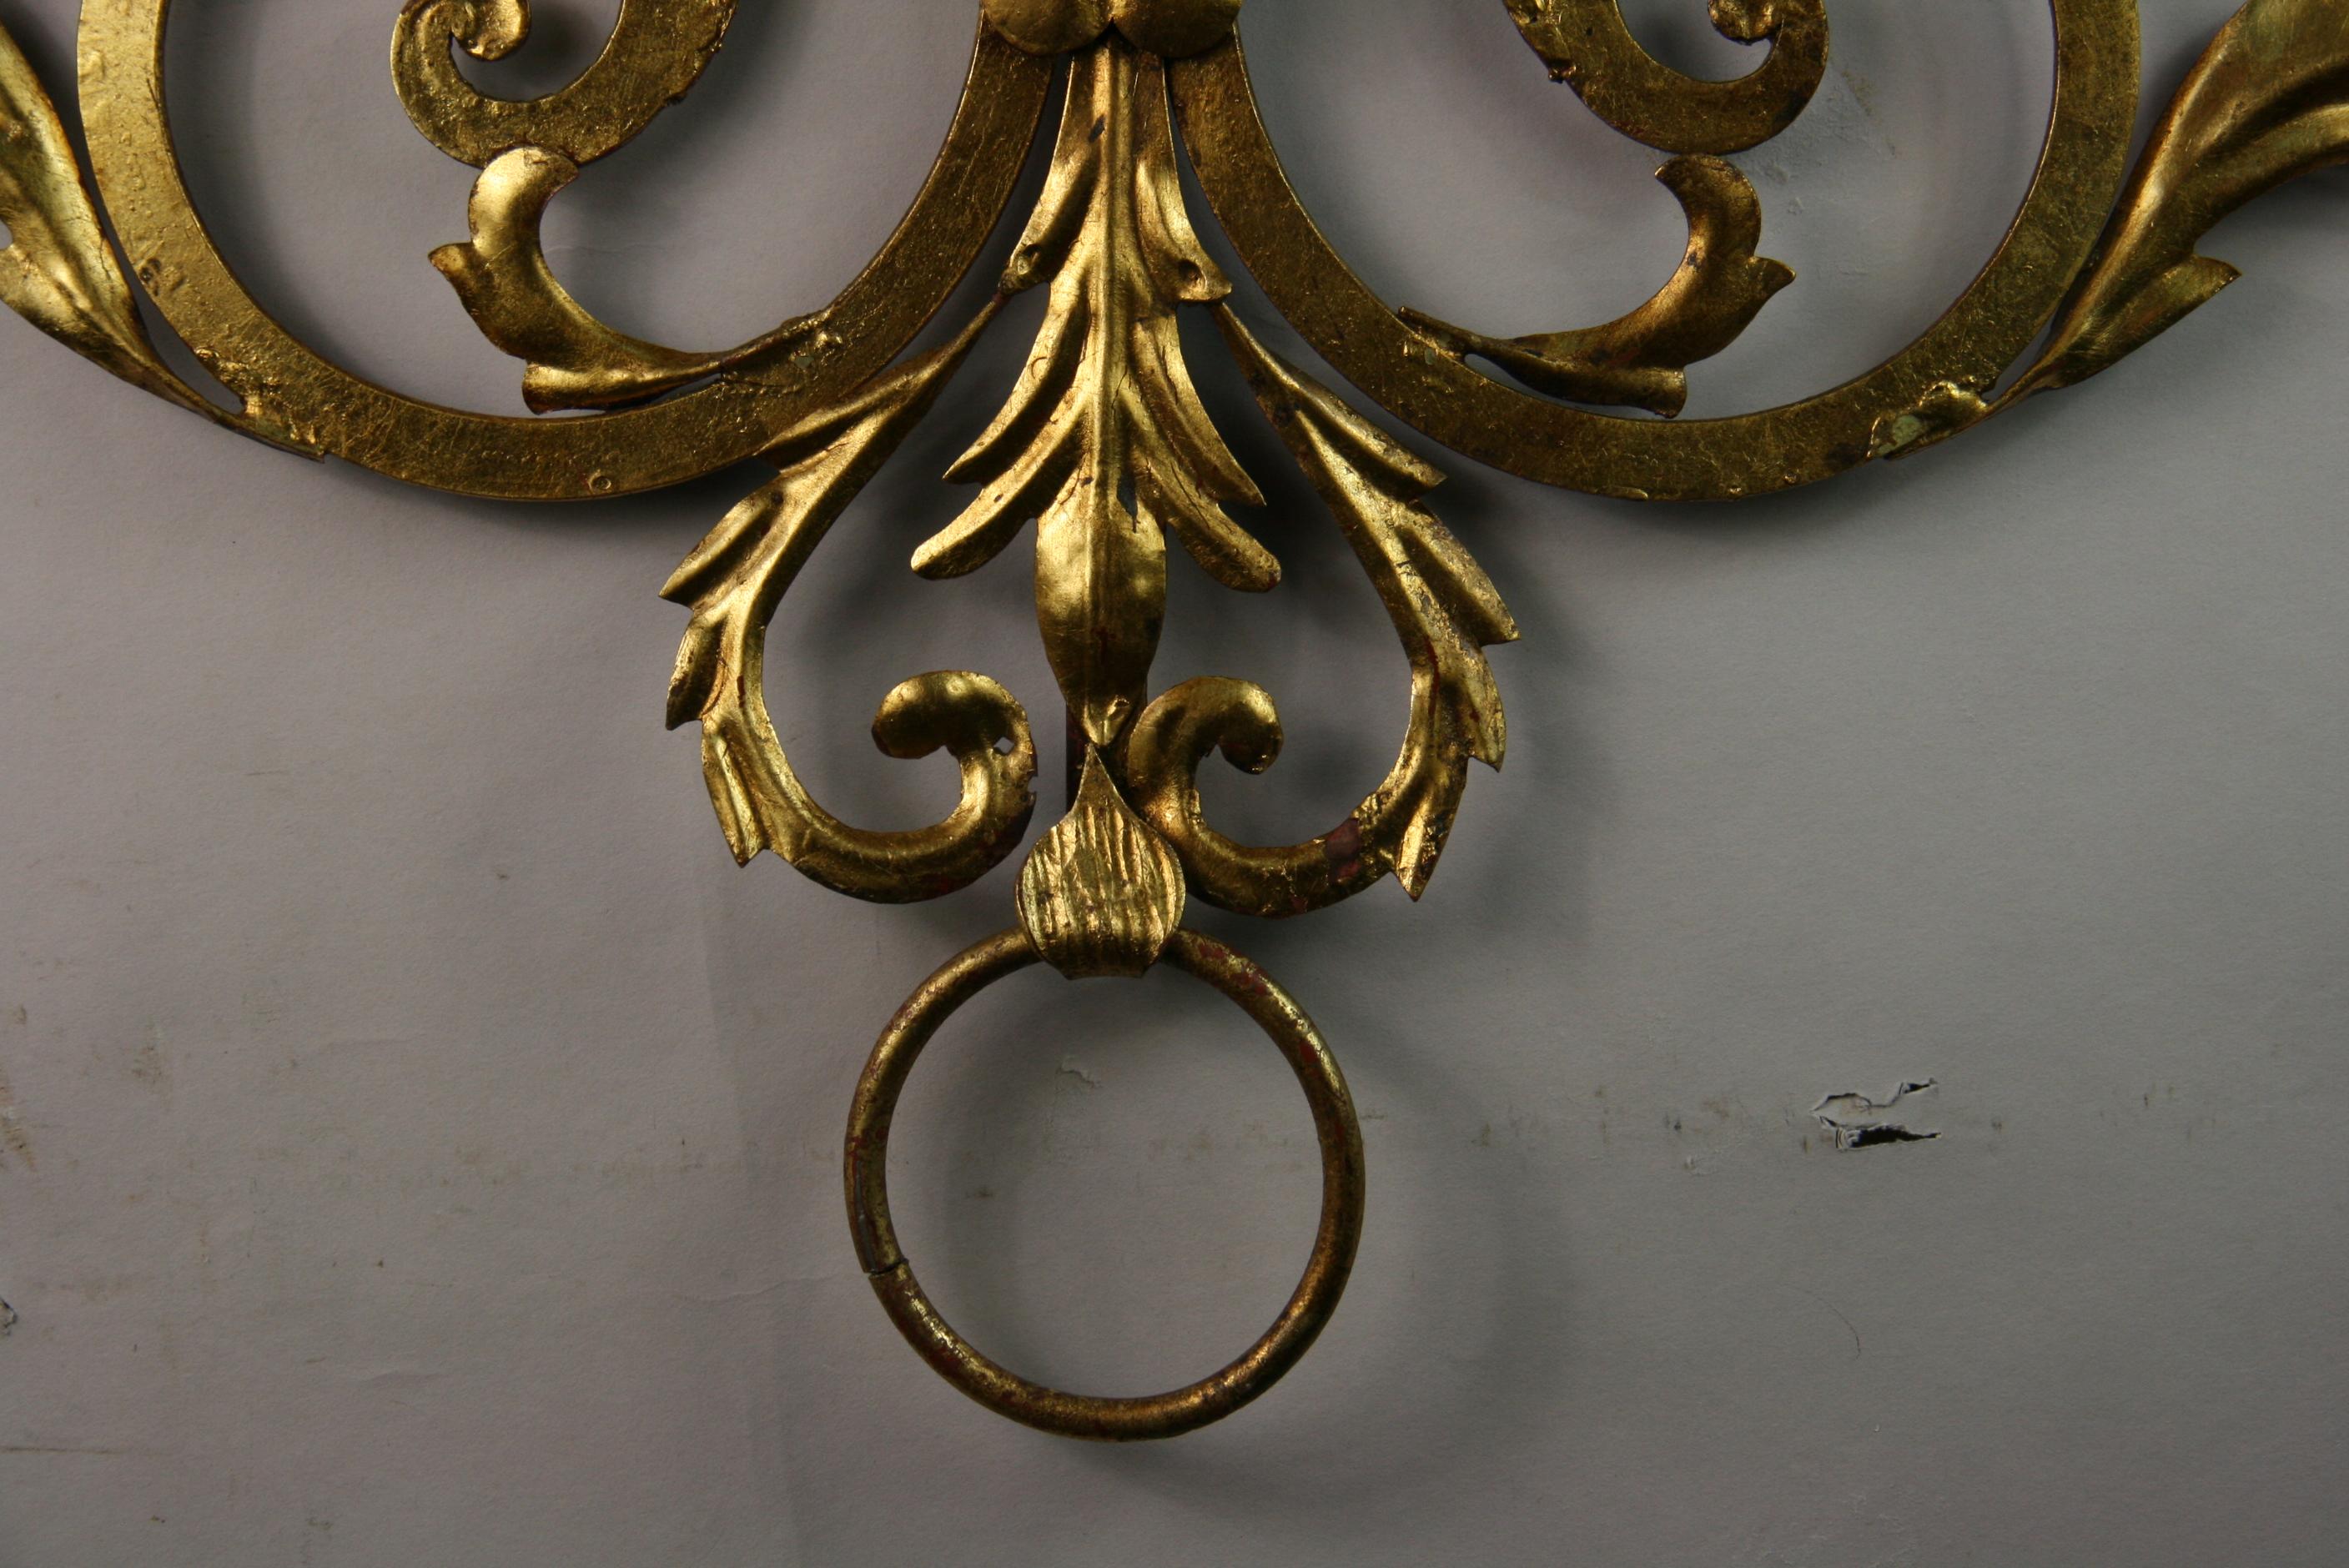 8-157 Italienischer 7-flammiger Kerzenleuchter aus vergoldetem Metall und Holz mit Foliendetails.
Das große Format eignet sich für eine aufwendige Wandskulptur.